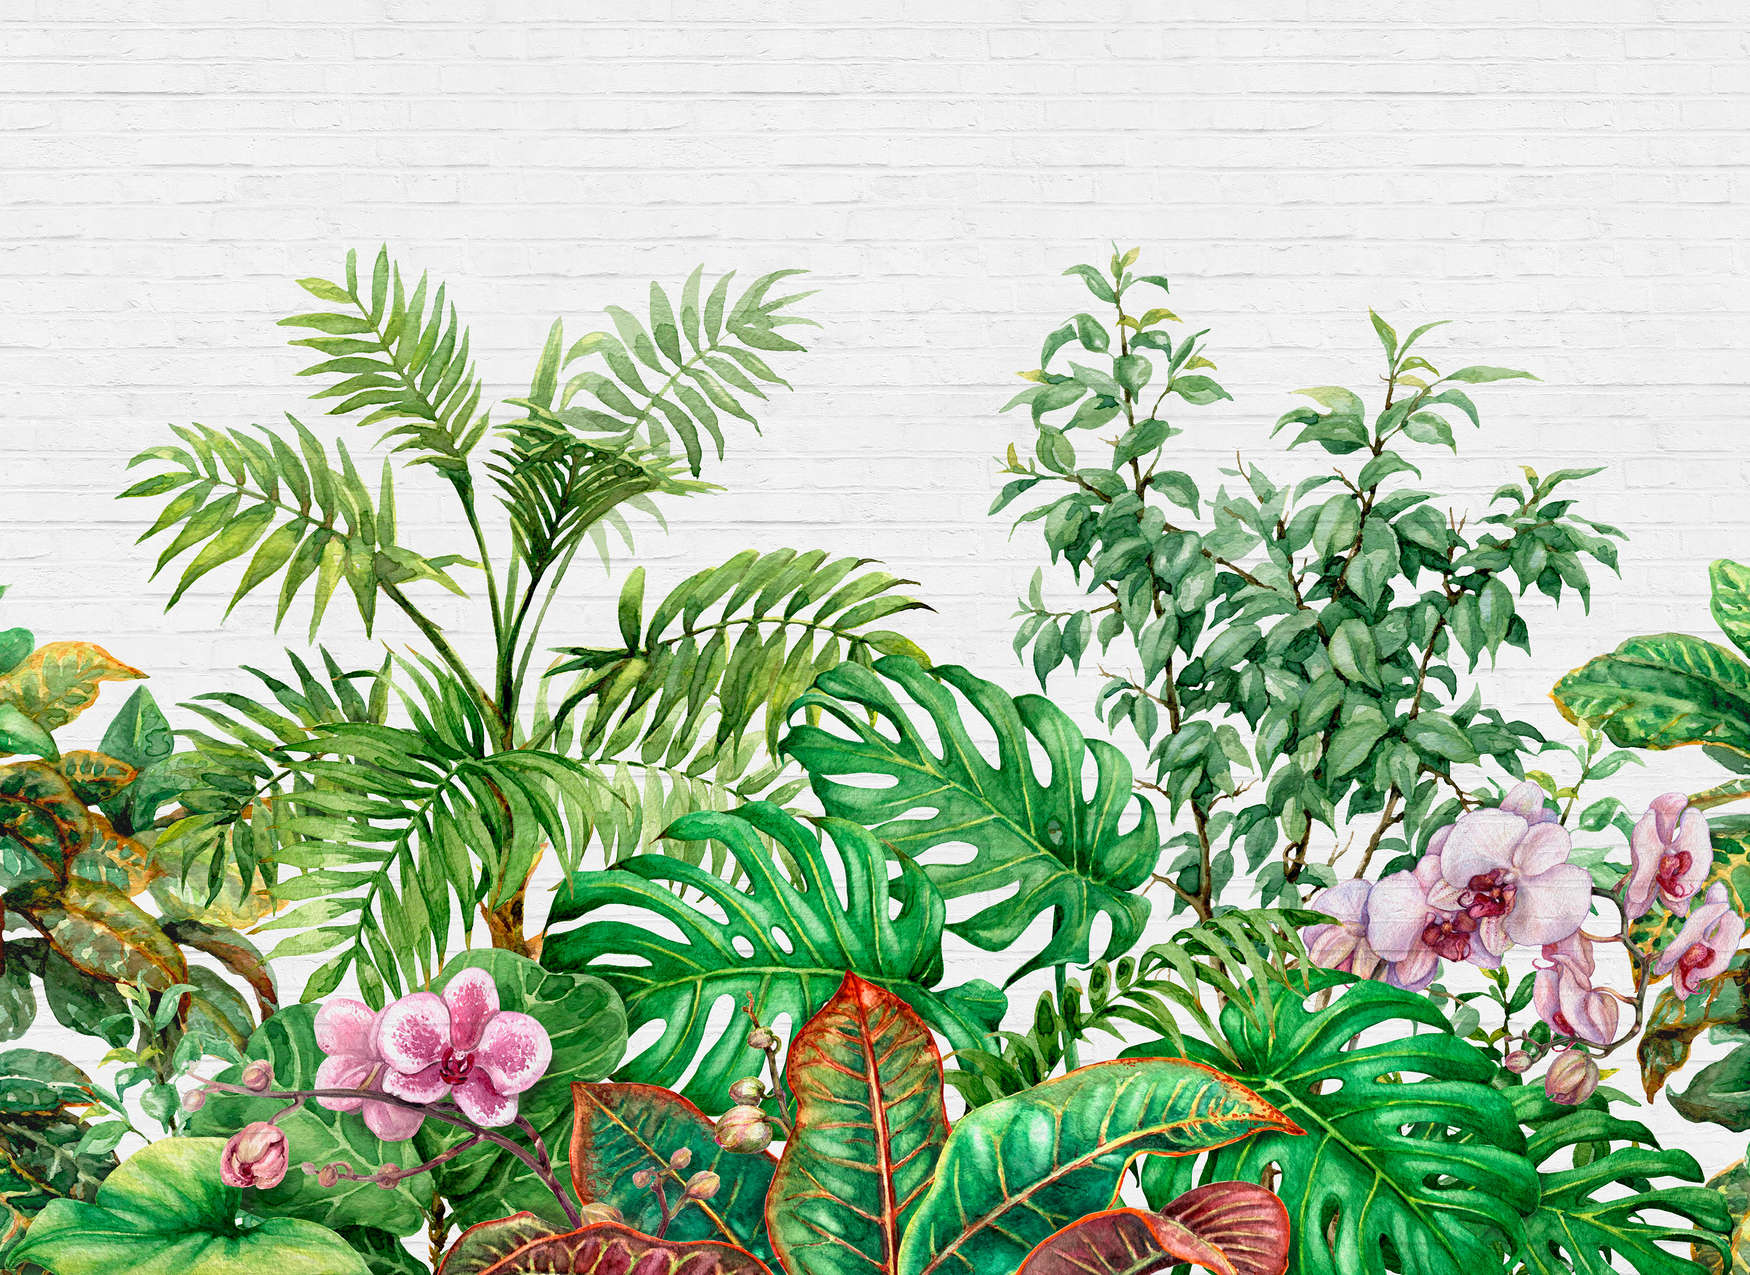             Motivo a parete con foglie della giungla - Verde, bianco, rosa
        